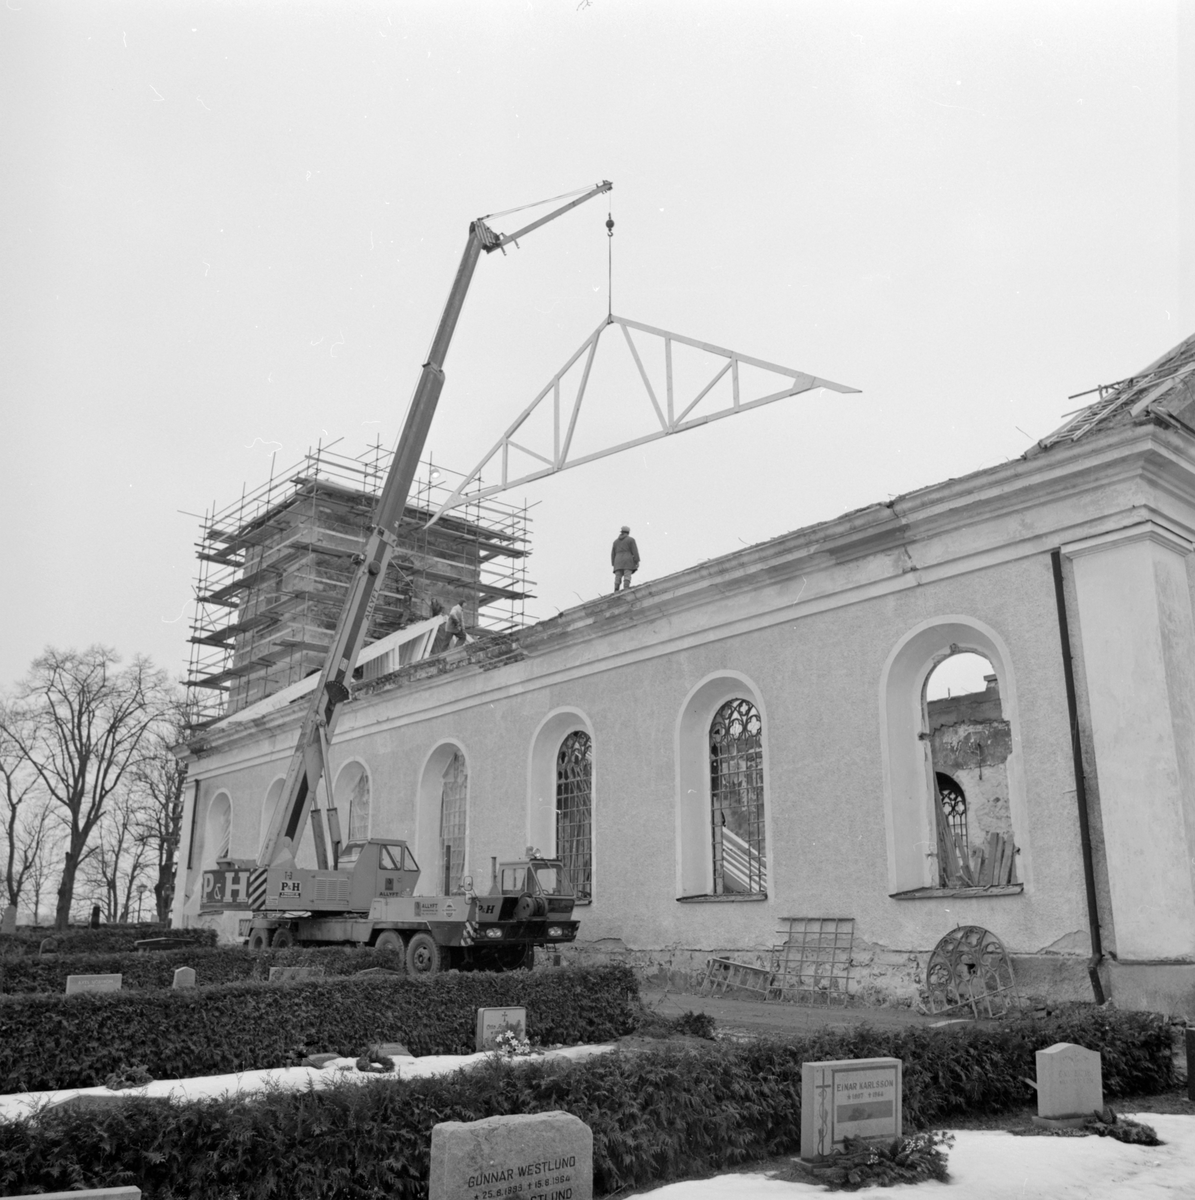 Den i mars 1977 brunna kyrkan i Västra Husby får nya takstolar under återuppförandet. Innan byggnadsarbetet startade hade man genomfört en arkeologisk utgrävning av lämningarna från den medeltida kyrka som tidigare fanns på platsen. Resultaten kunde, om inte styrka, visa på att den tidigaste stenkyrkan mycket väl kan ha invigts år 1186, som sägnen omtalar. Stenkyrkan har dessutom föregåtts av en träkyrka.